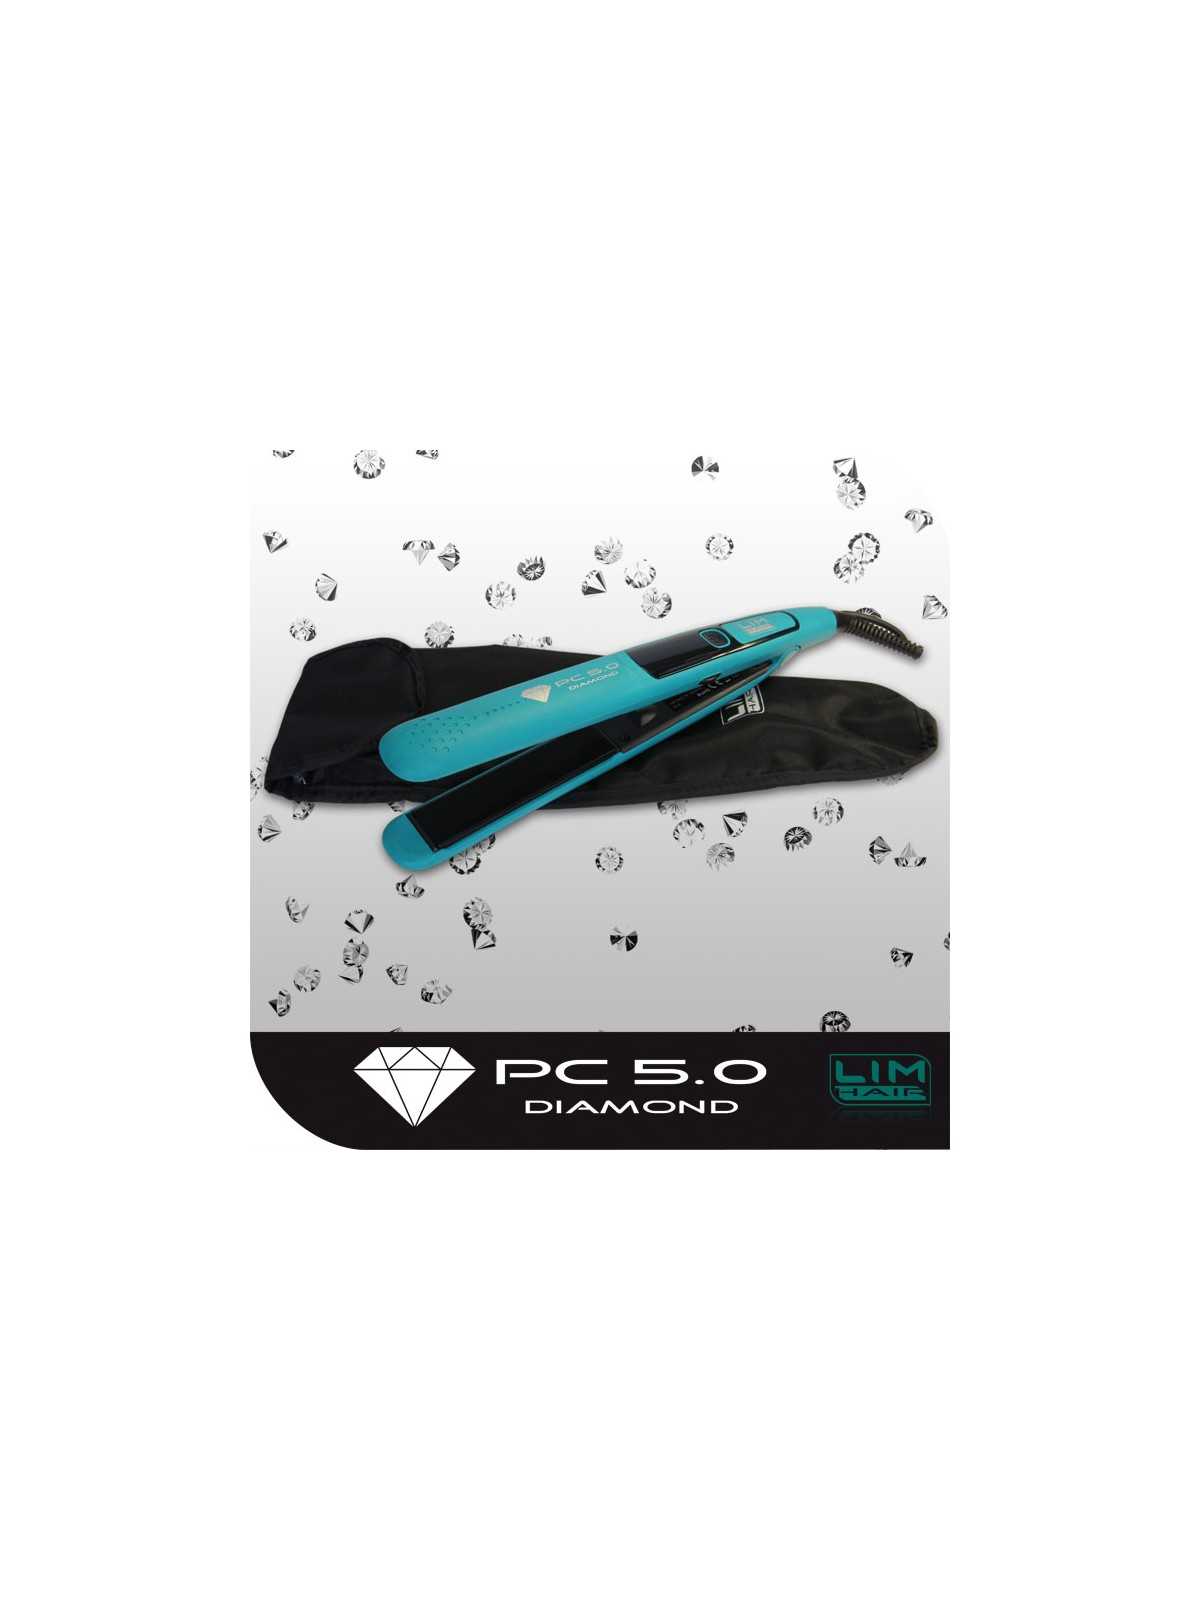 Regala Plancha profesional pc 5.0 Diamond Turquesa .- Lim Hair con nuestra selección de Tenacillas y Planchas por tan sólo 58,34 € o precio específico 55,42 € en Thalie Care